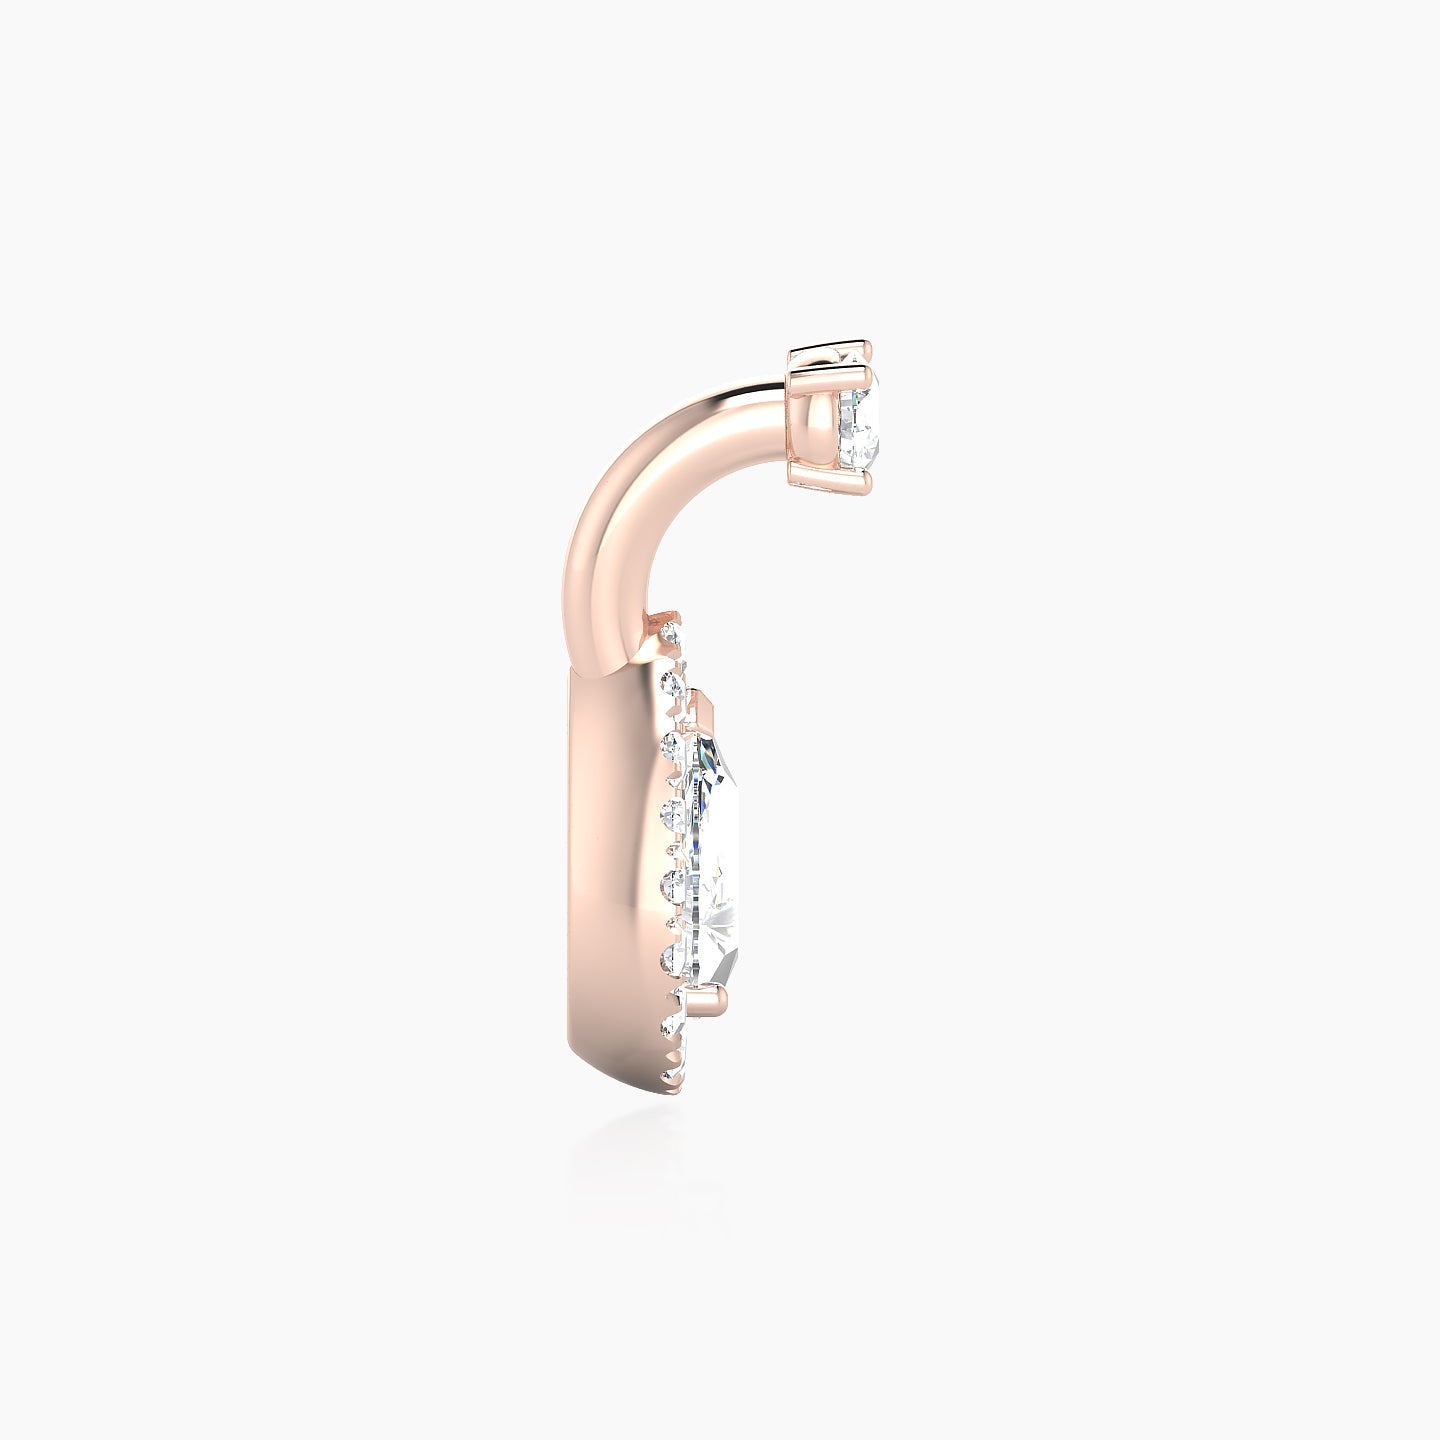 Eirene | 18k Rose Gold 6 mm 9.5 mm Halo Pear Diamond Navel Piercing